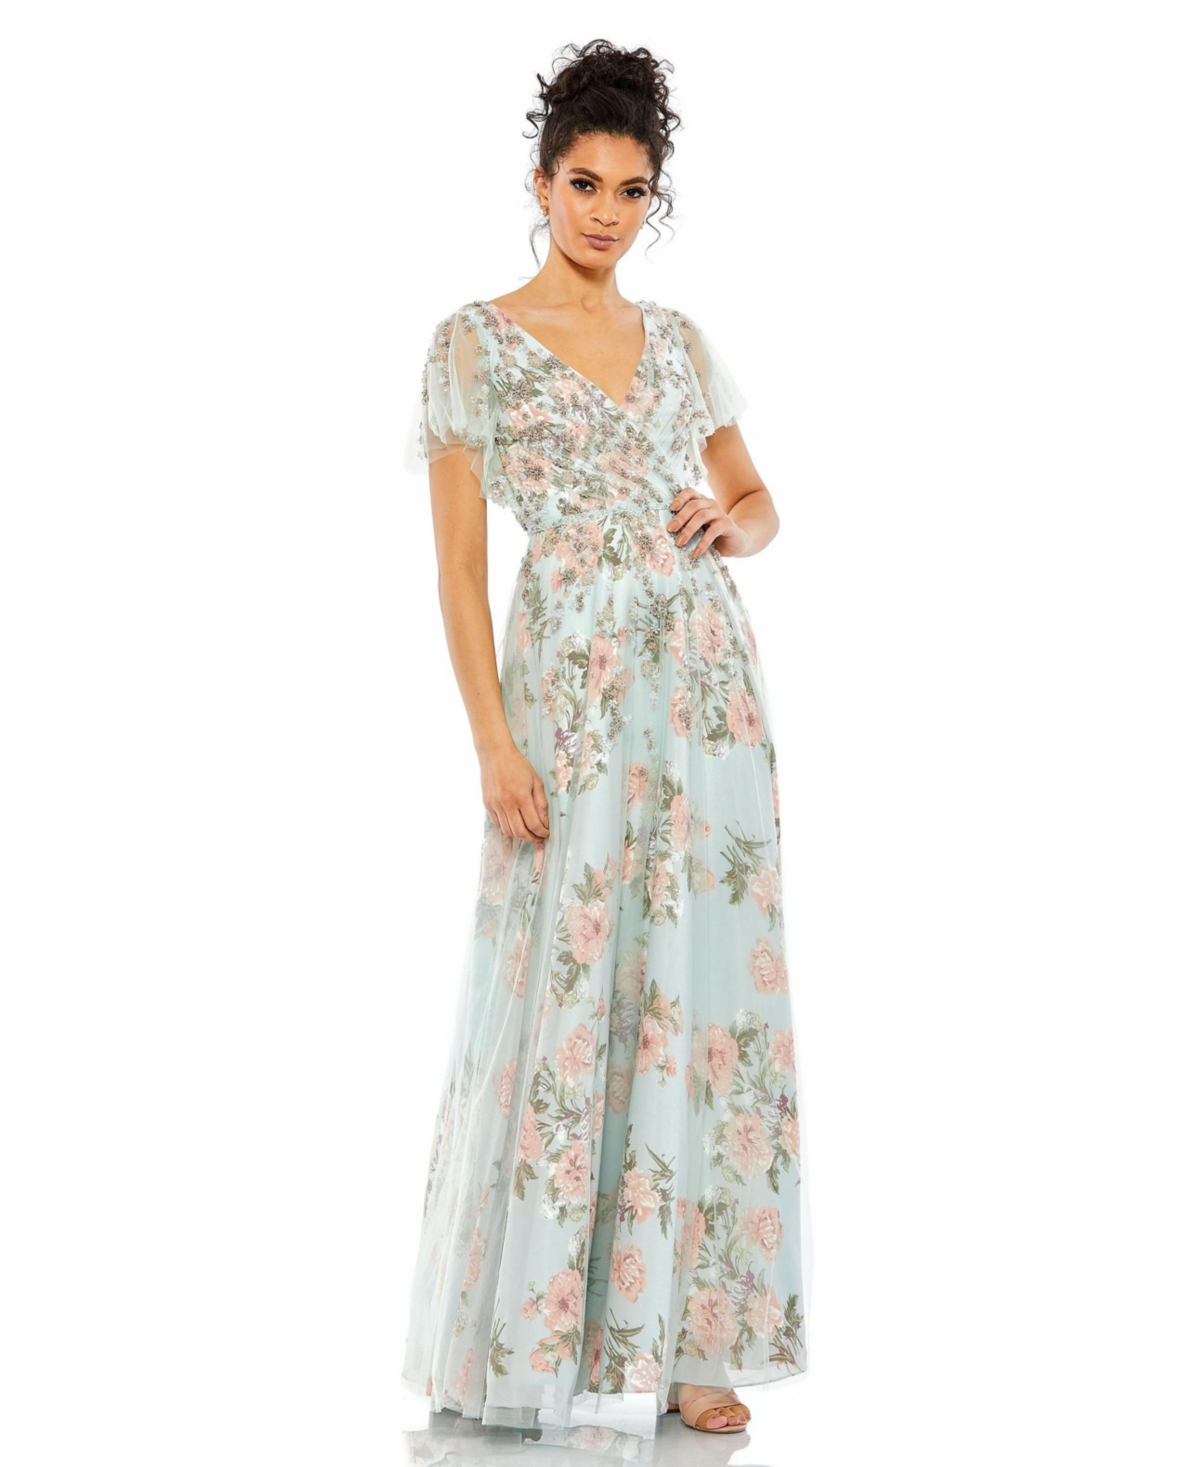 1920s Evening Dresses & Formal Gowns Womens Floral Flutter Sleeve V-Neck Maxi Dress - Blue multi $458.00 AT vintagedancer.com